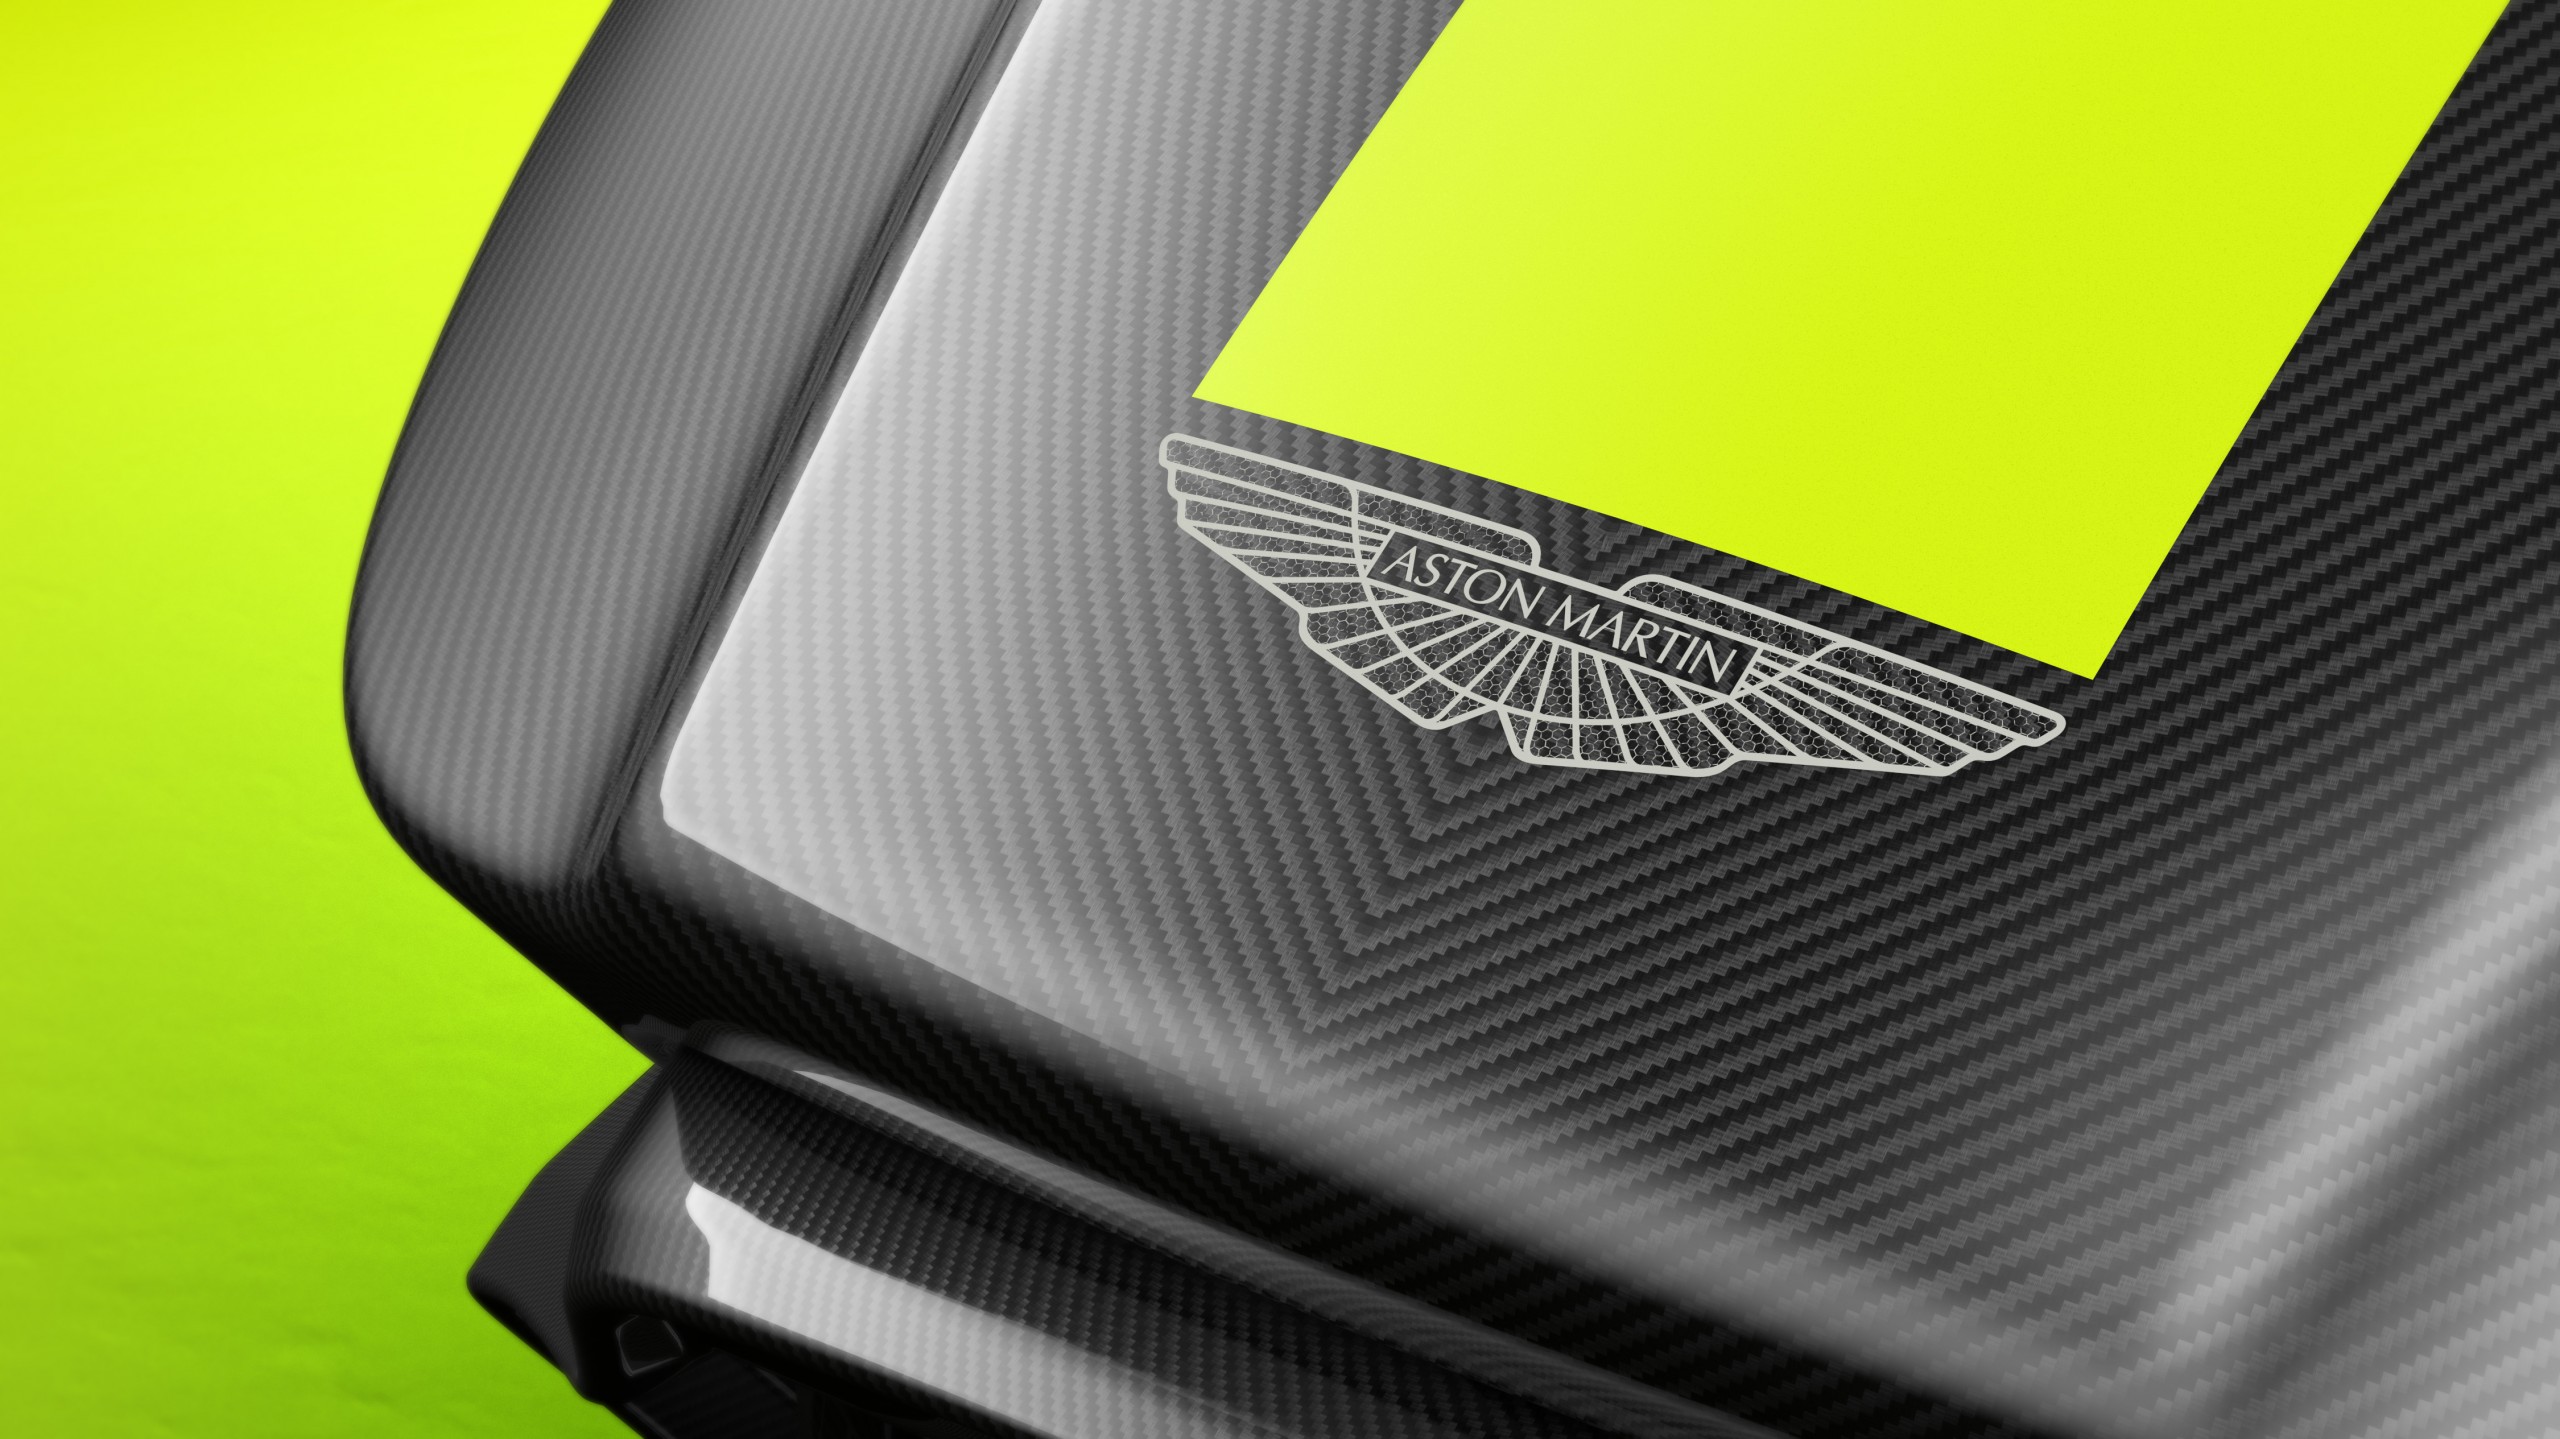 Sportautók élményét kínálja az Aston Martin szimulátora 1